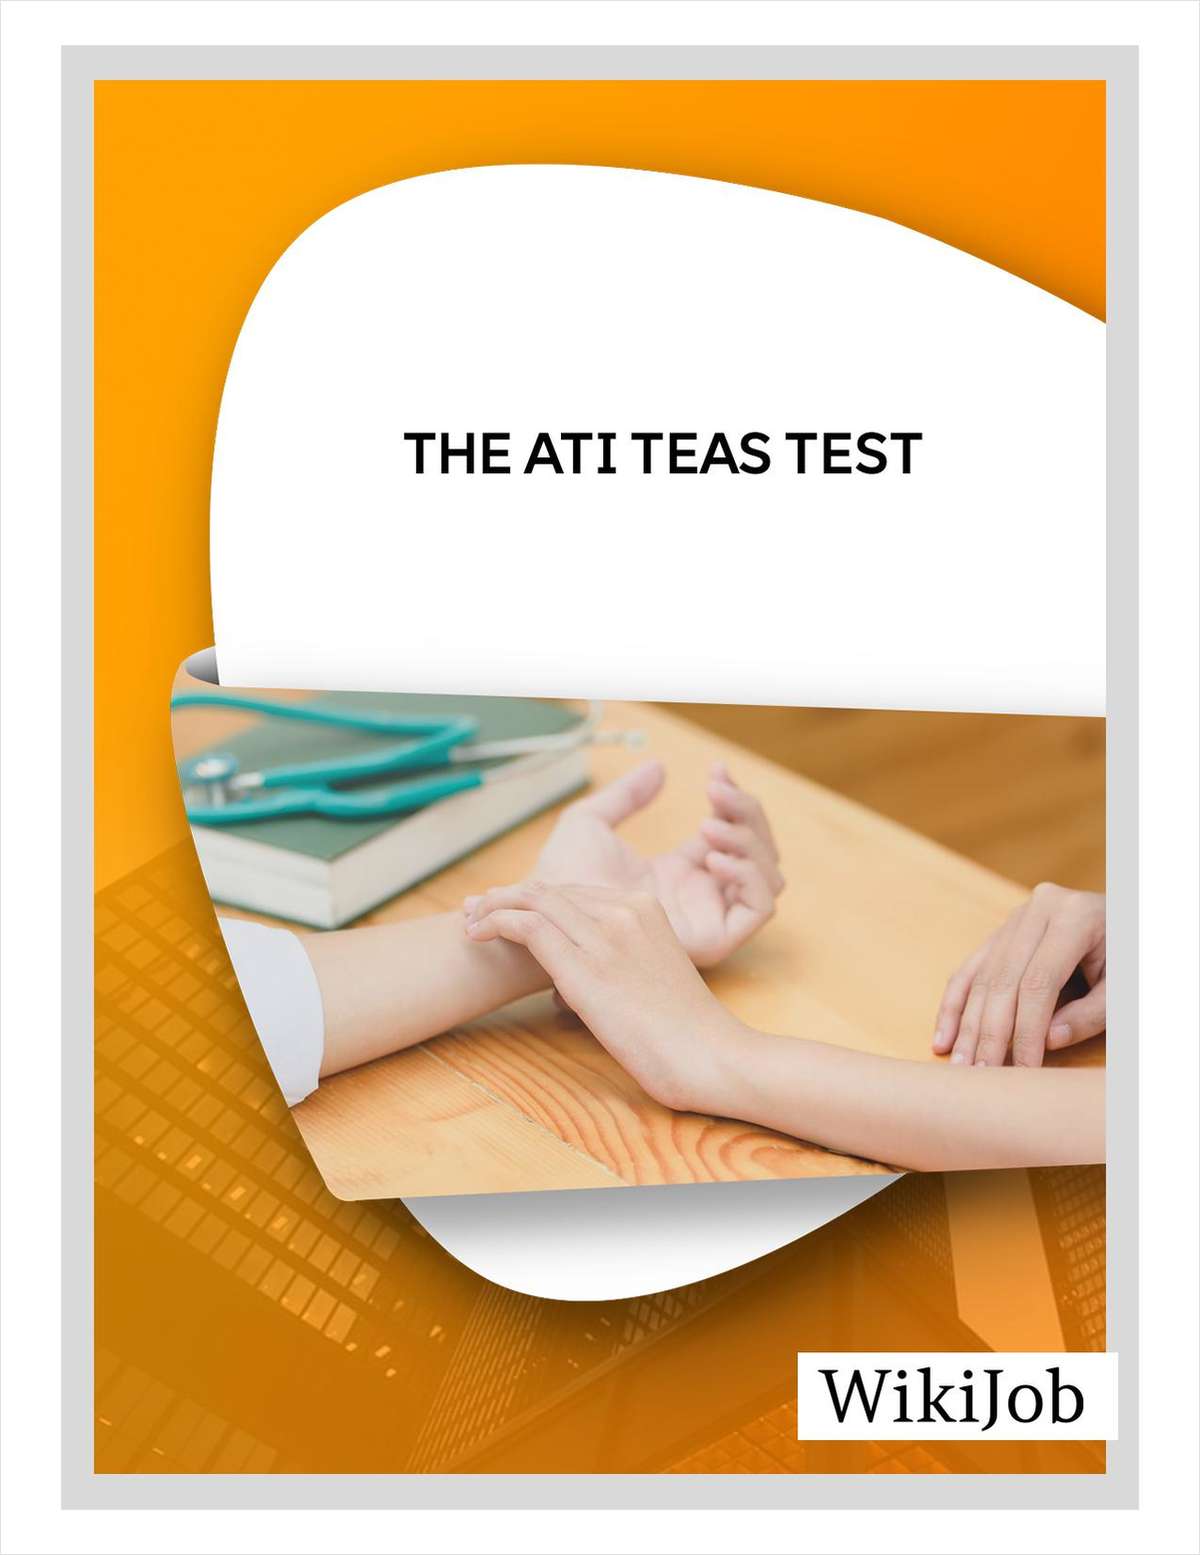 The ATI TEAS Test